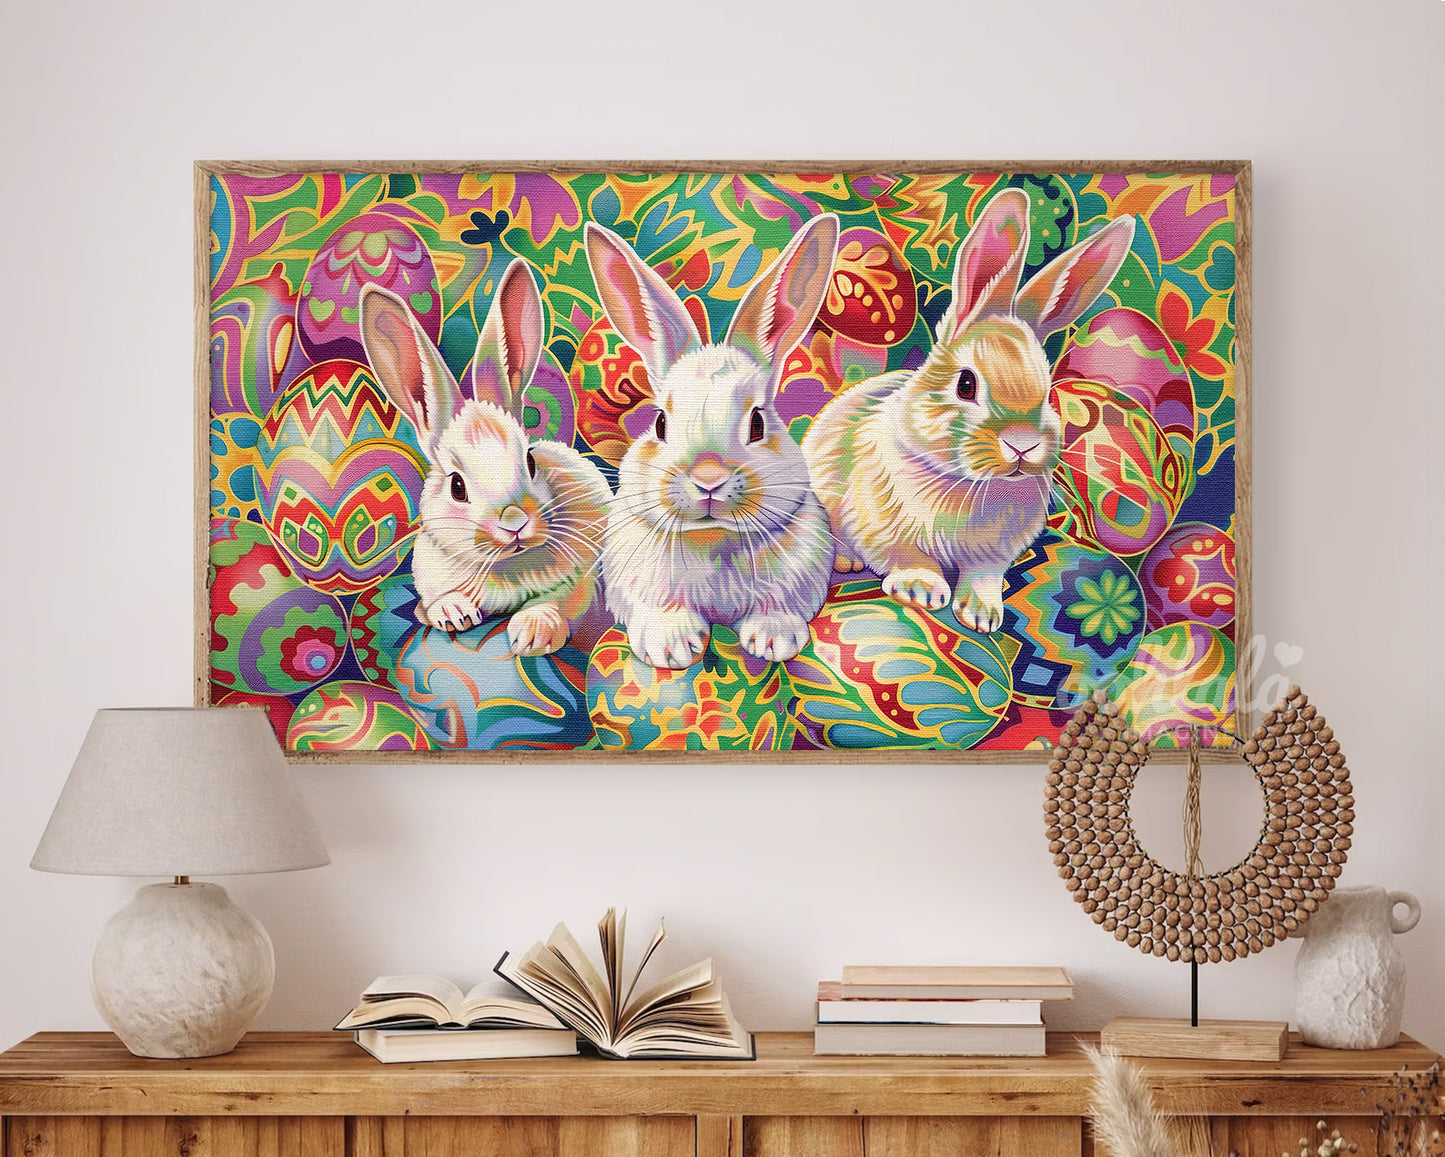 Artistic Easter Bunny and Egg Frame TV Wallpaper for Easter Decor